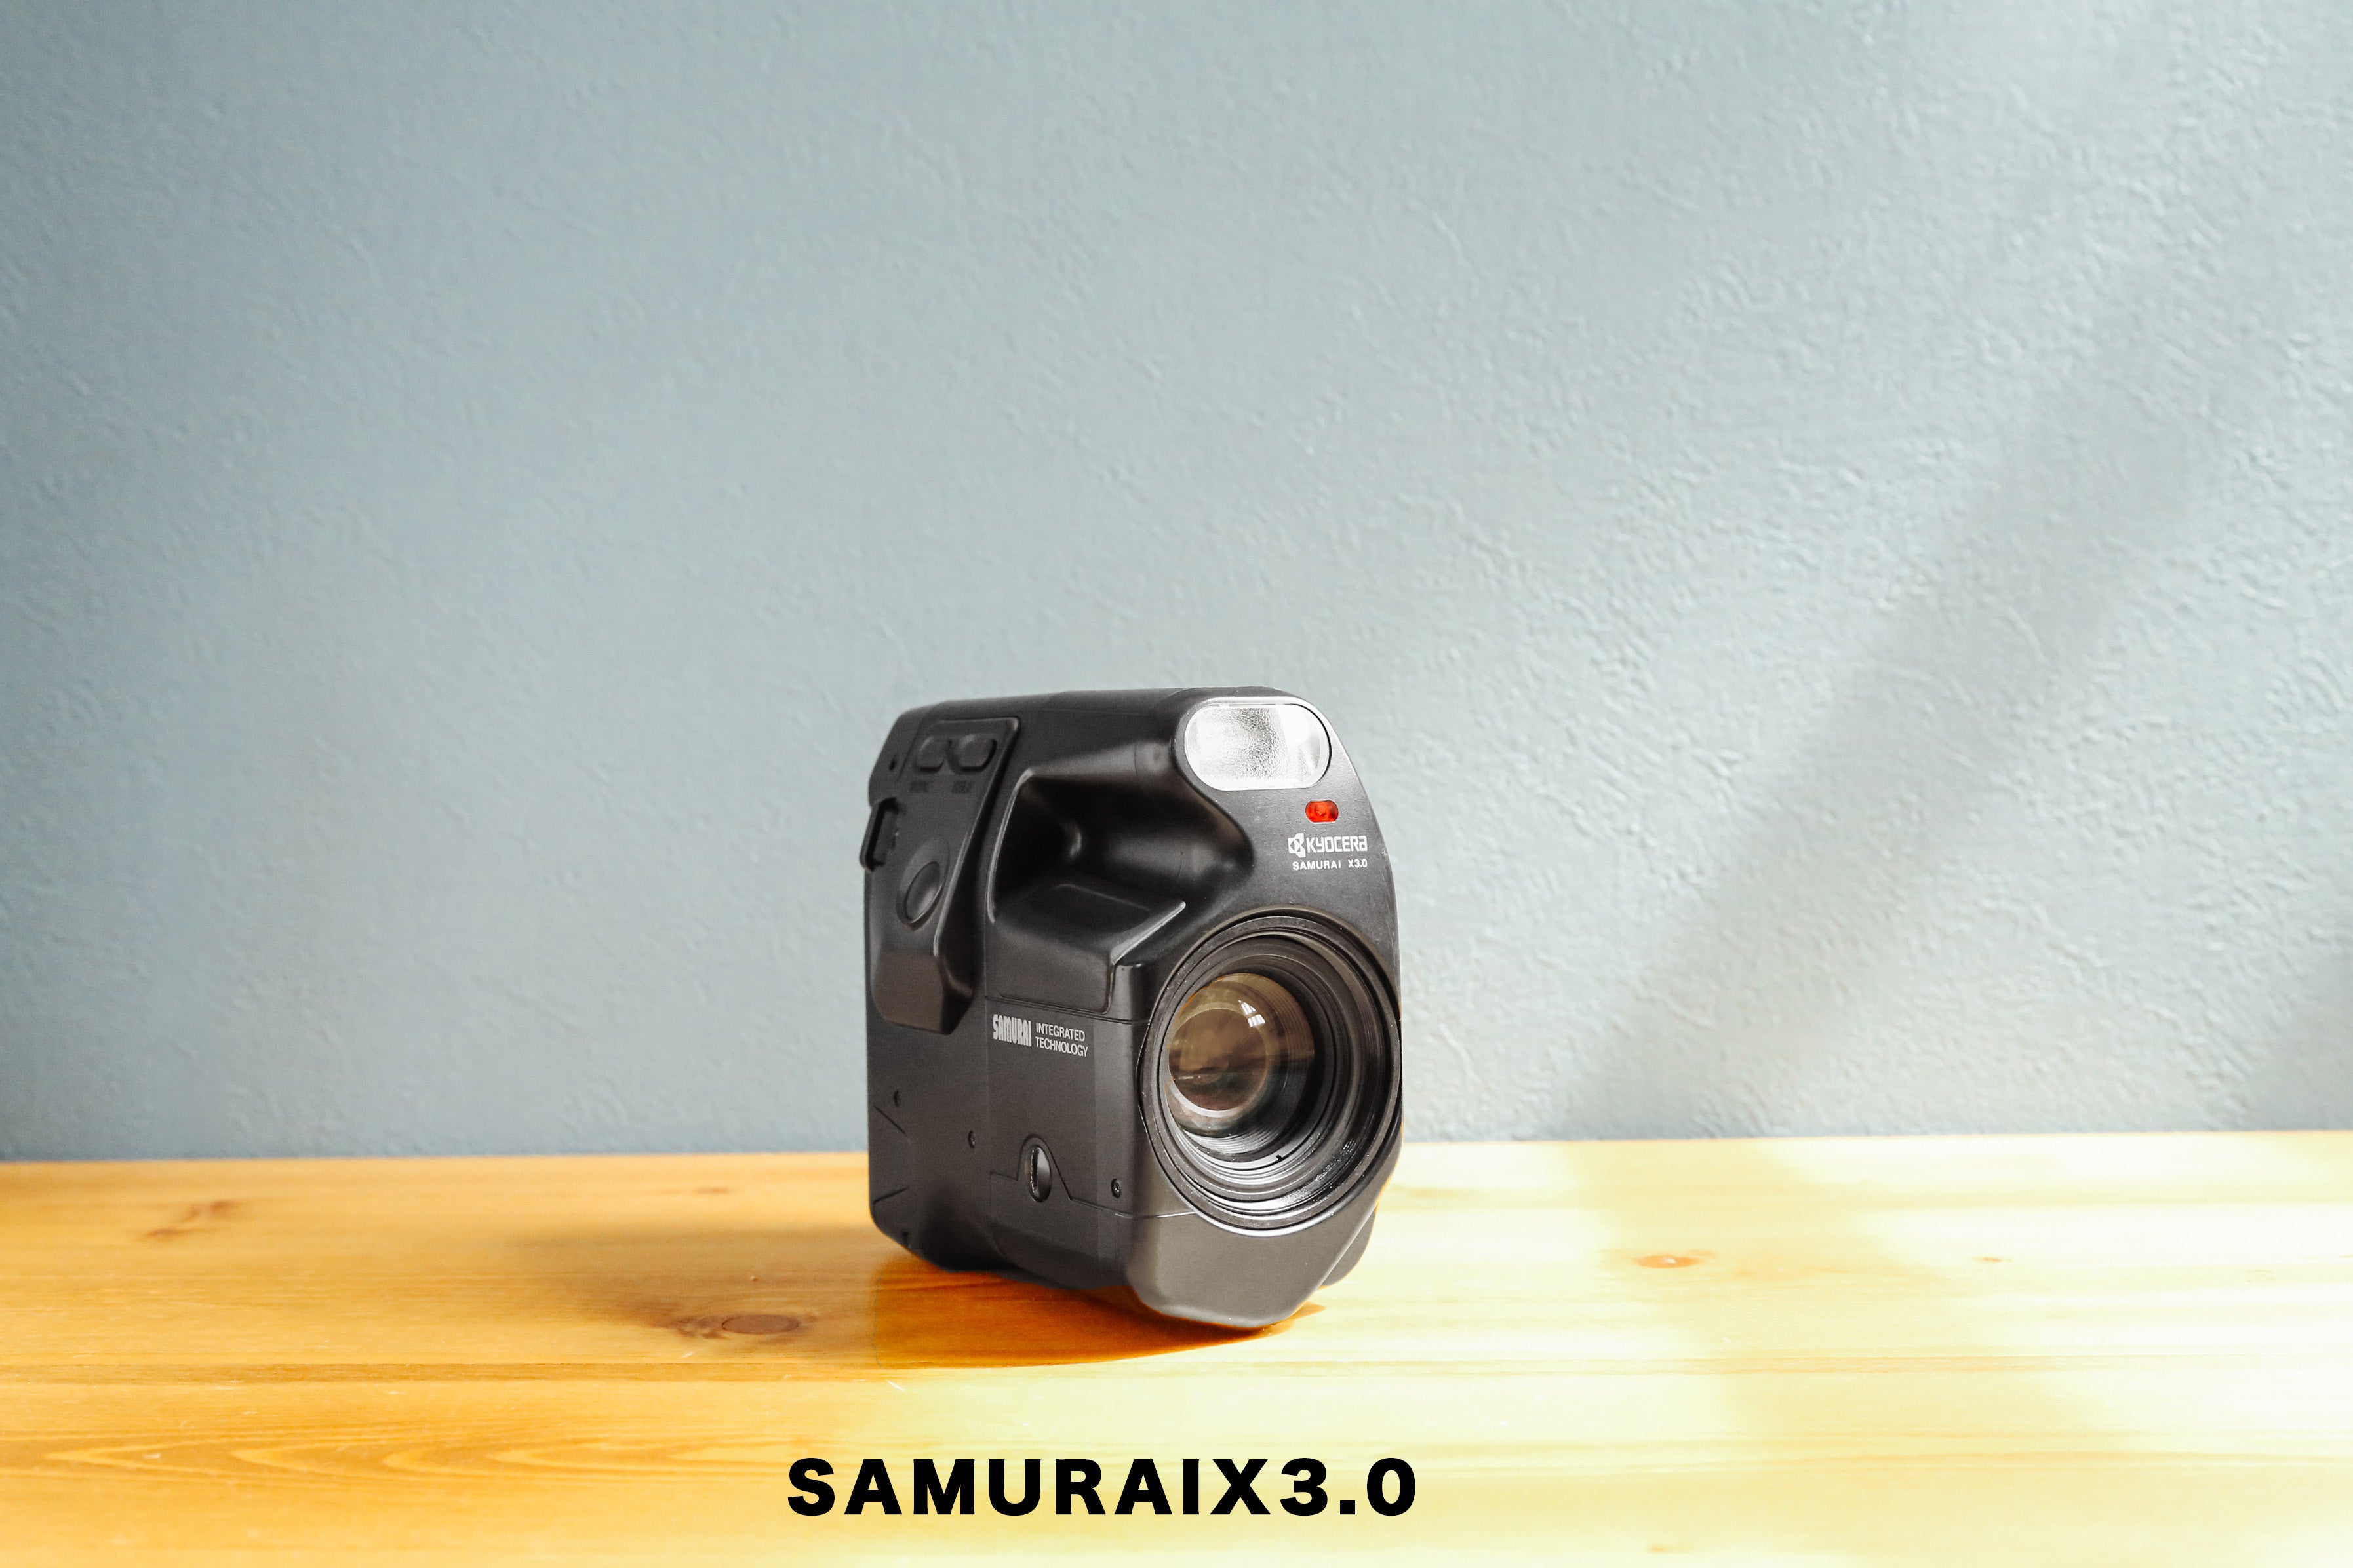 KYOCERA SAMURAIX3.0【完動品】【レア❗️】ハーフカメラ